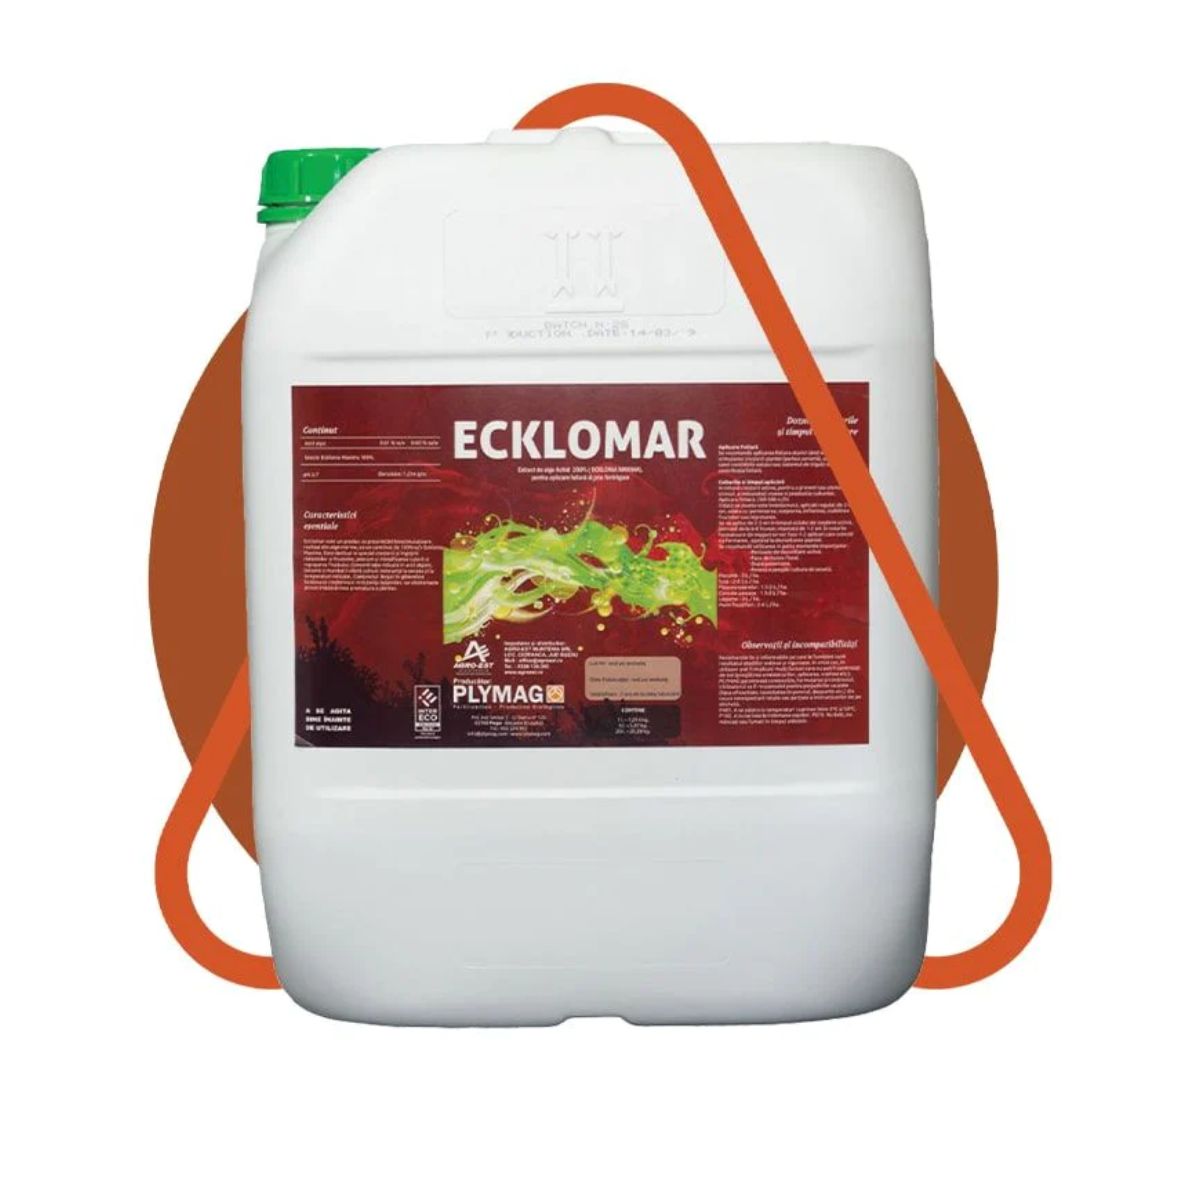 Biostimulatori eco - Biostimulator ecologic cu extract de alge 92% Ecklomar, 5L, hectarul.ro